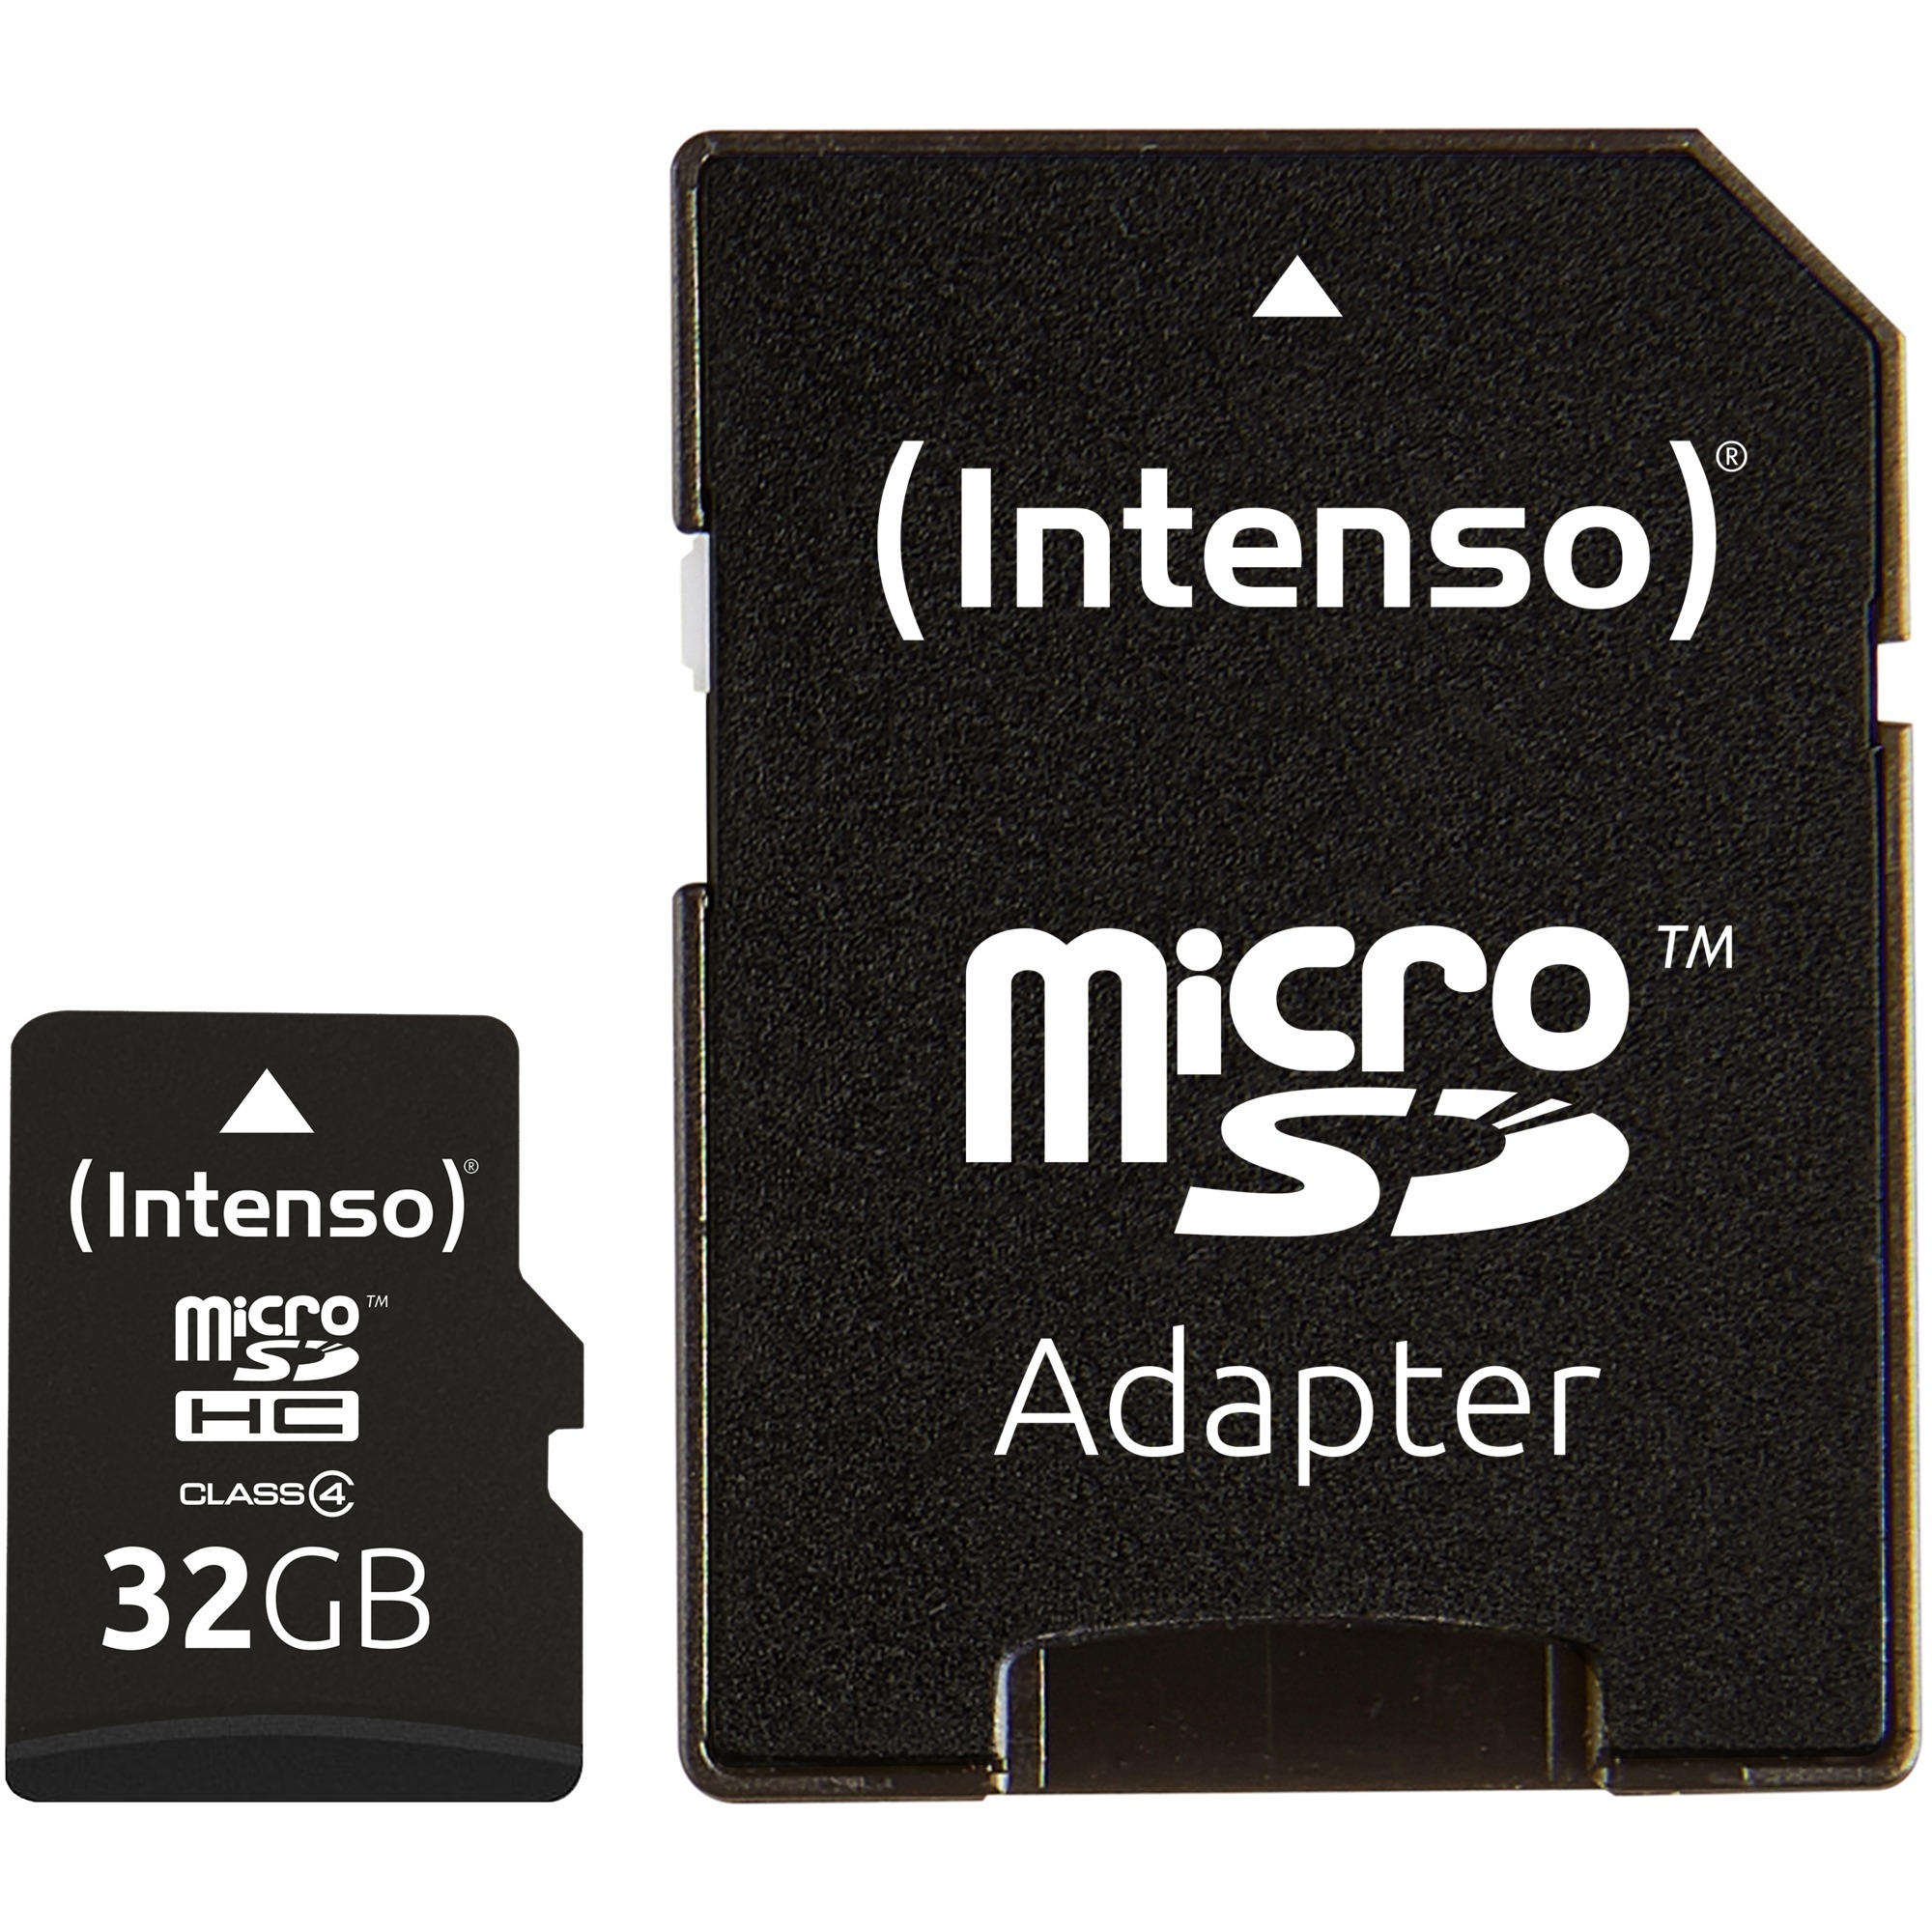 MicroSDHC 32GB pamięć flash Klasa 4, Karty pamięci